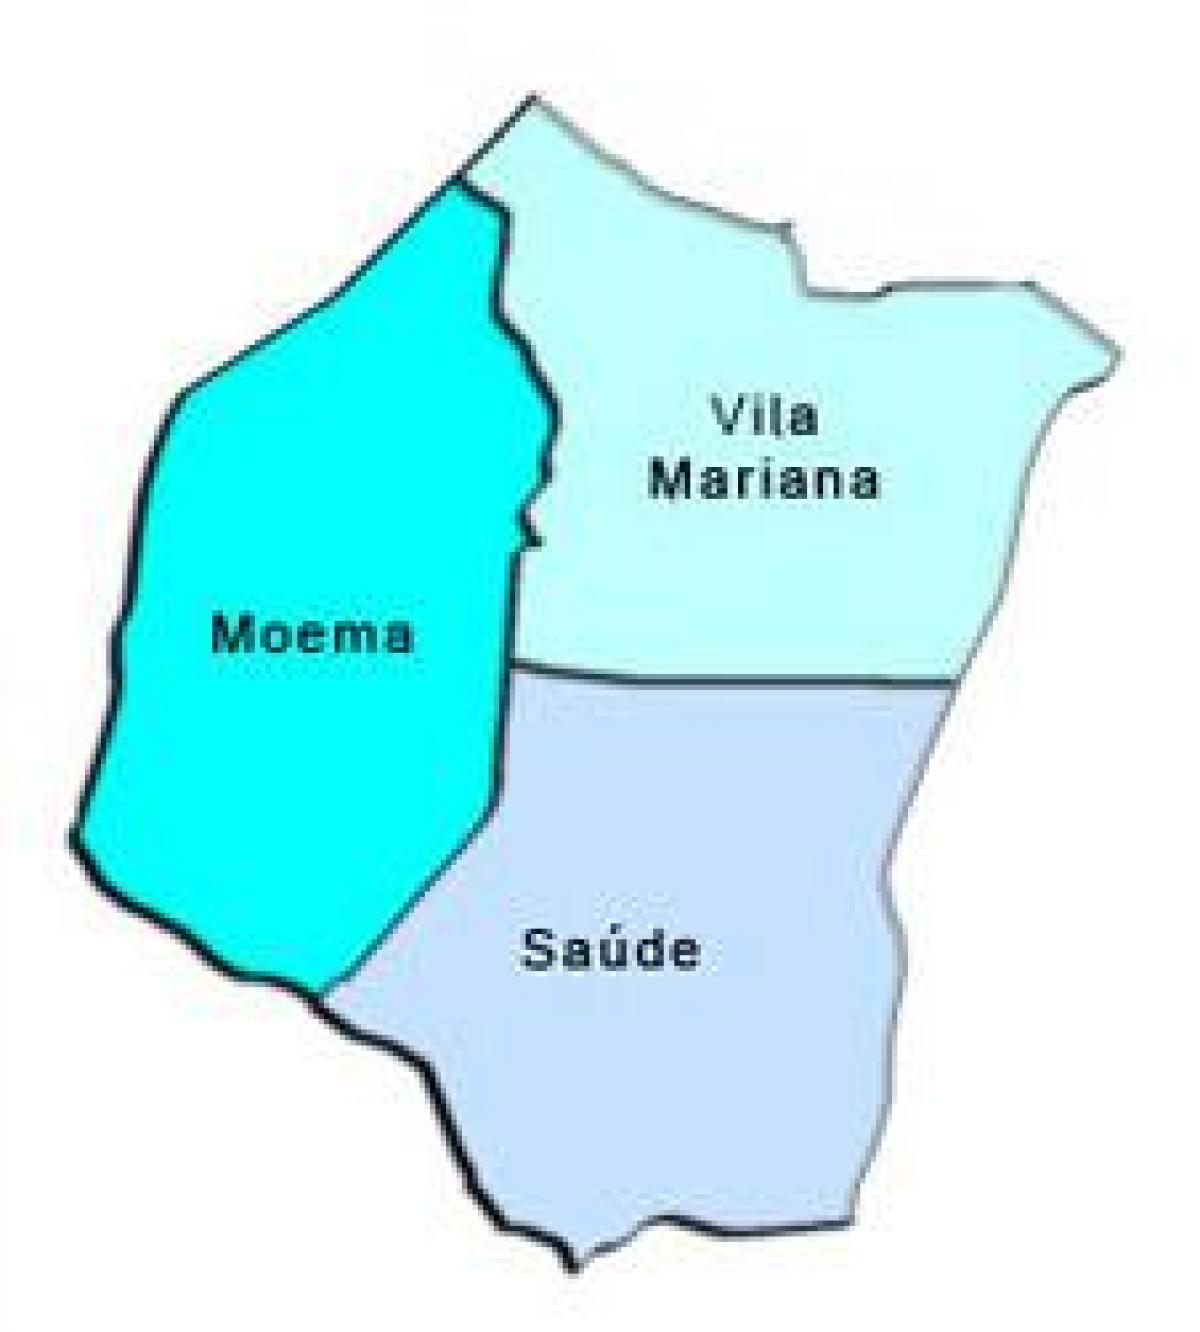 Harta e Vila Mariana nën-prefekturës